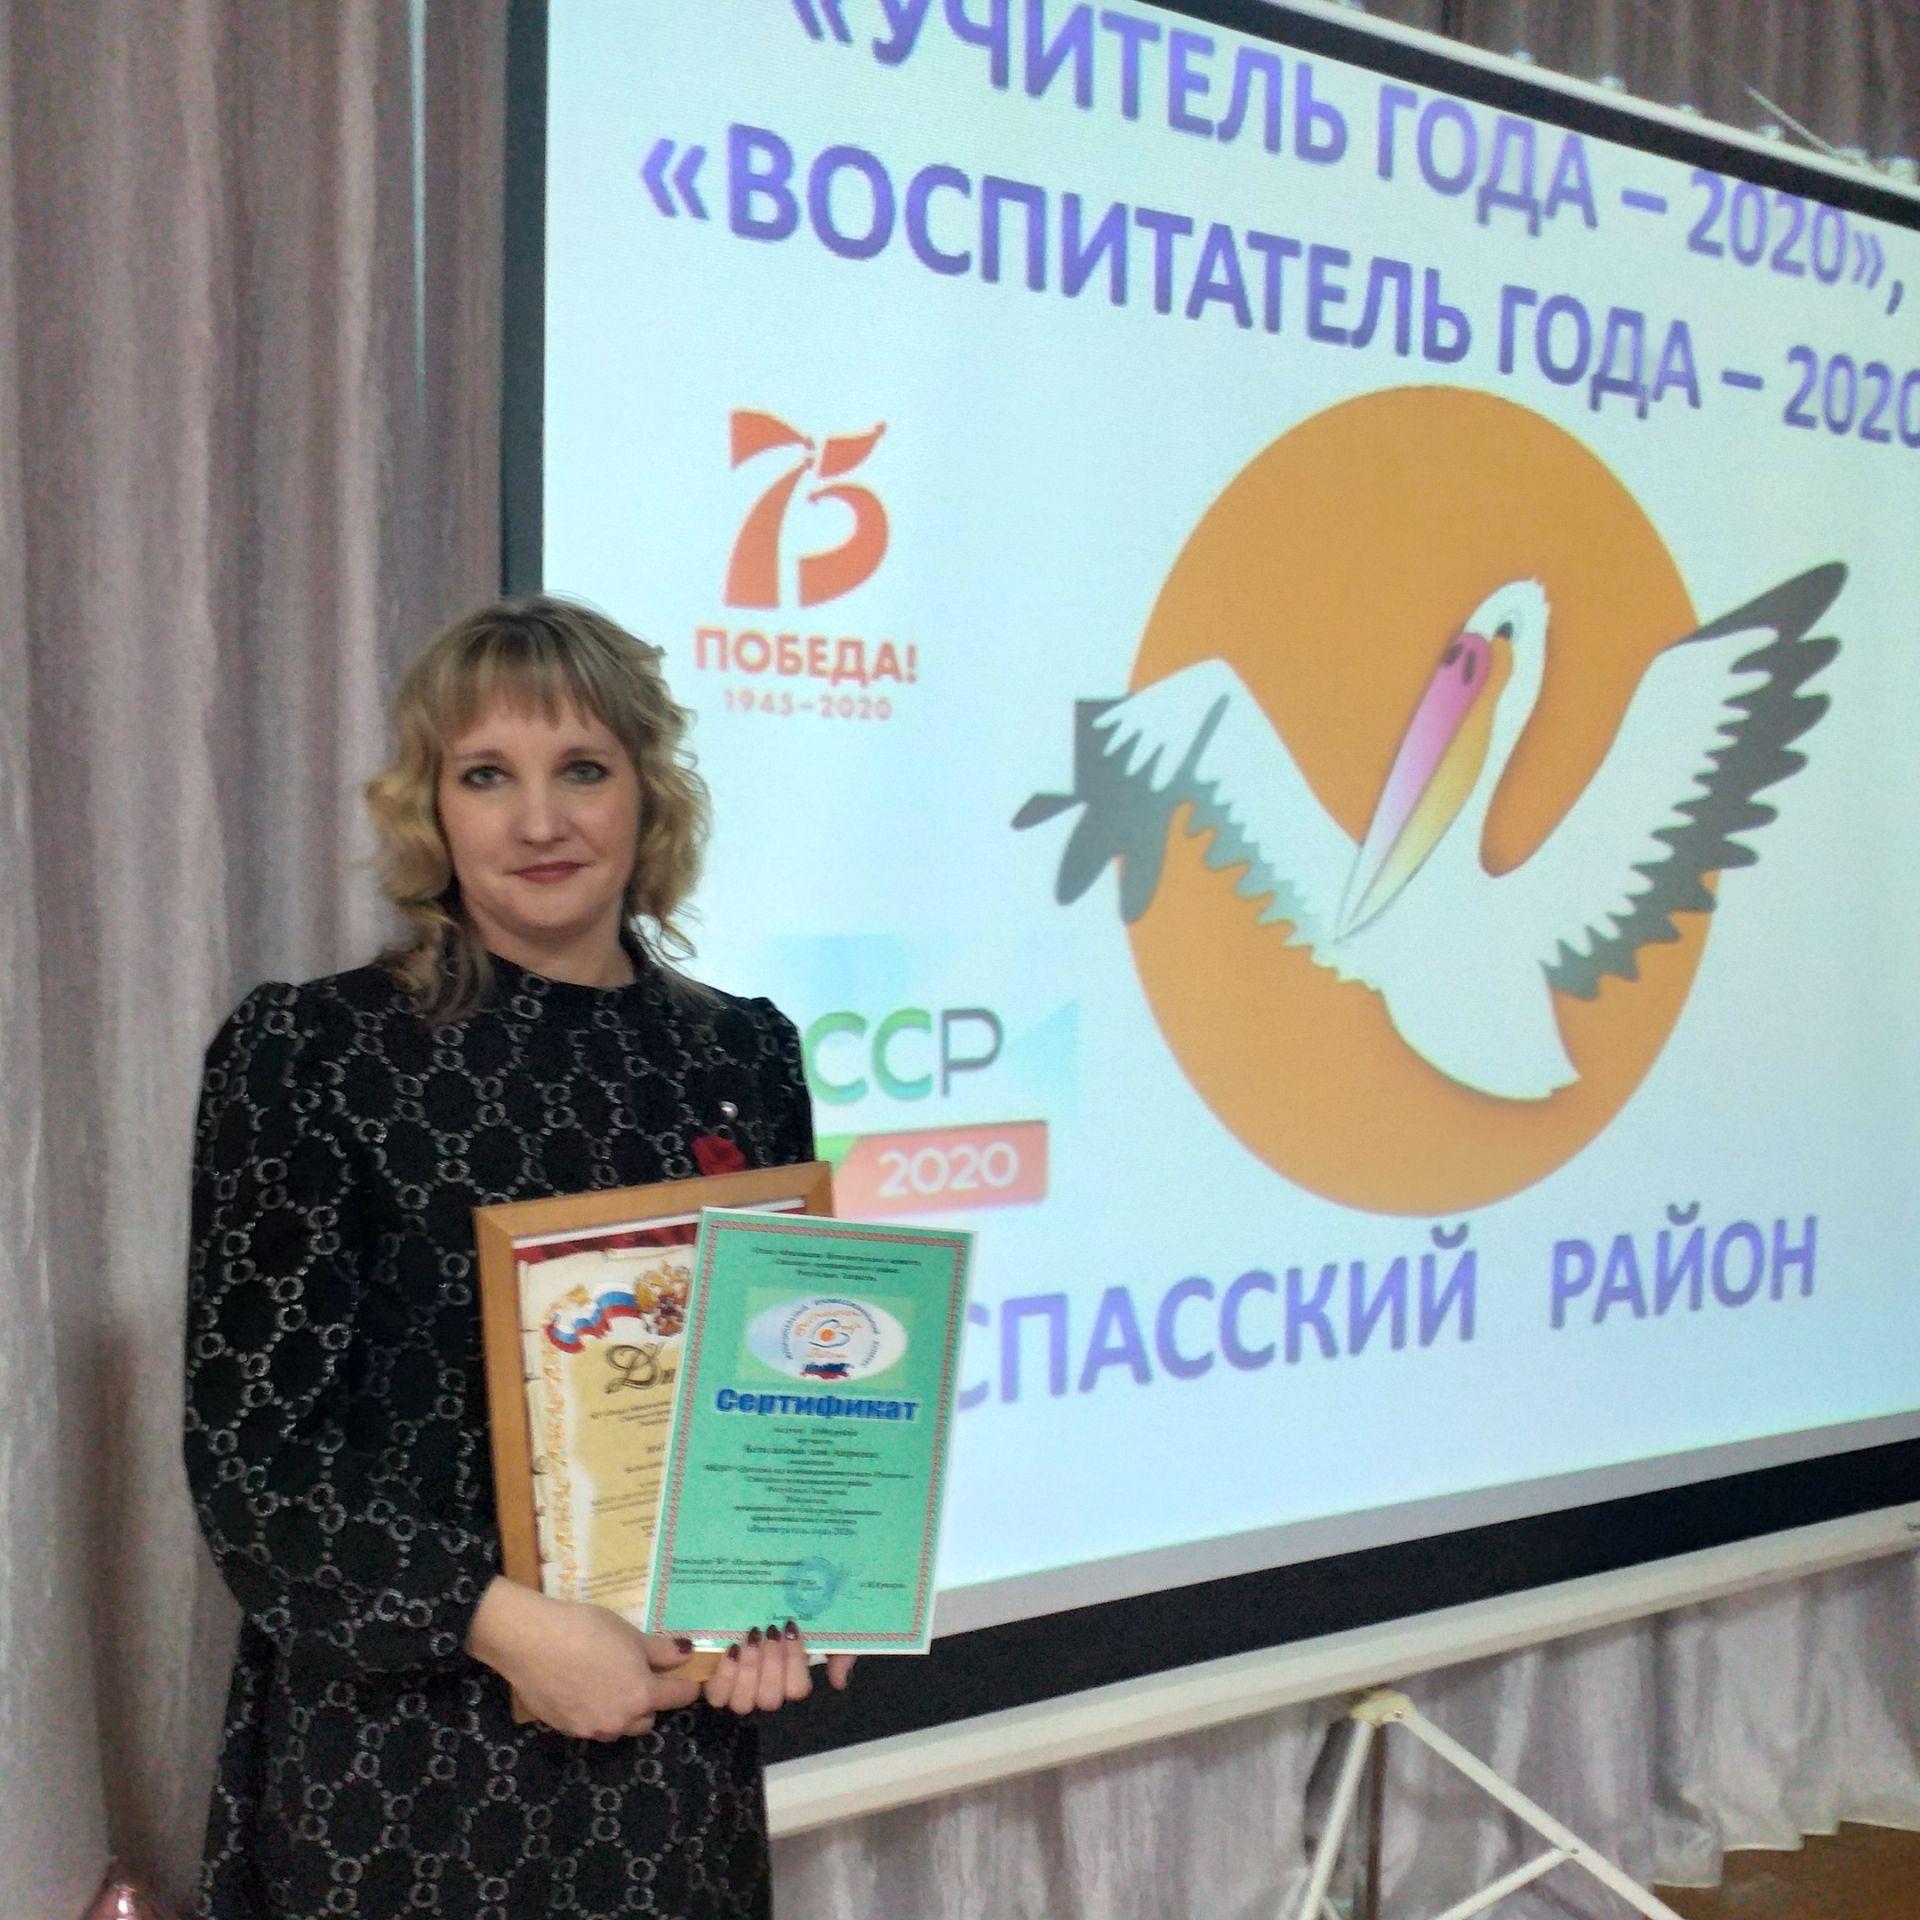 В Болгаре определены победители педагогических конкурсов (ВИДЕО, ФОТО)